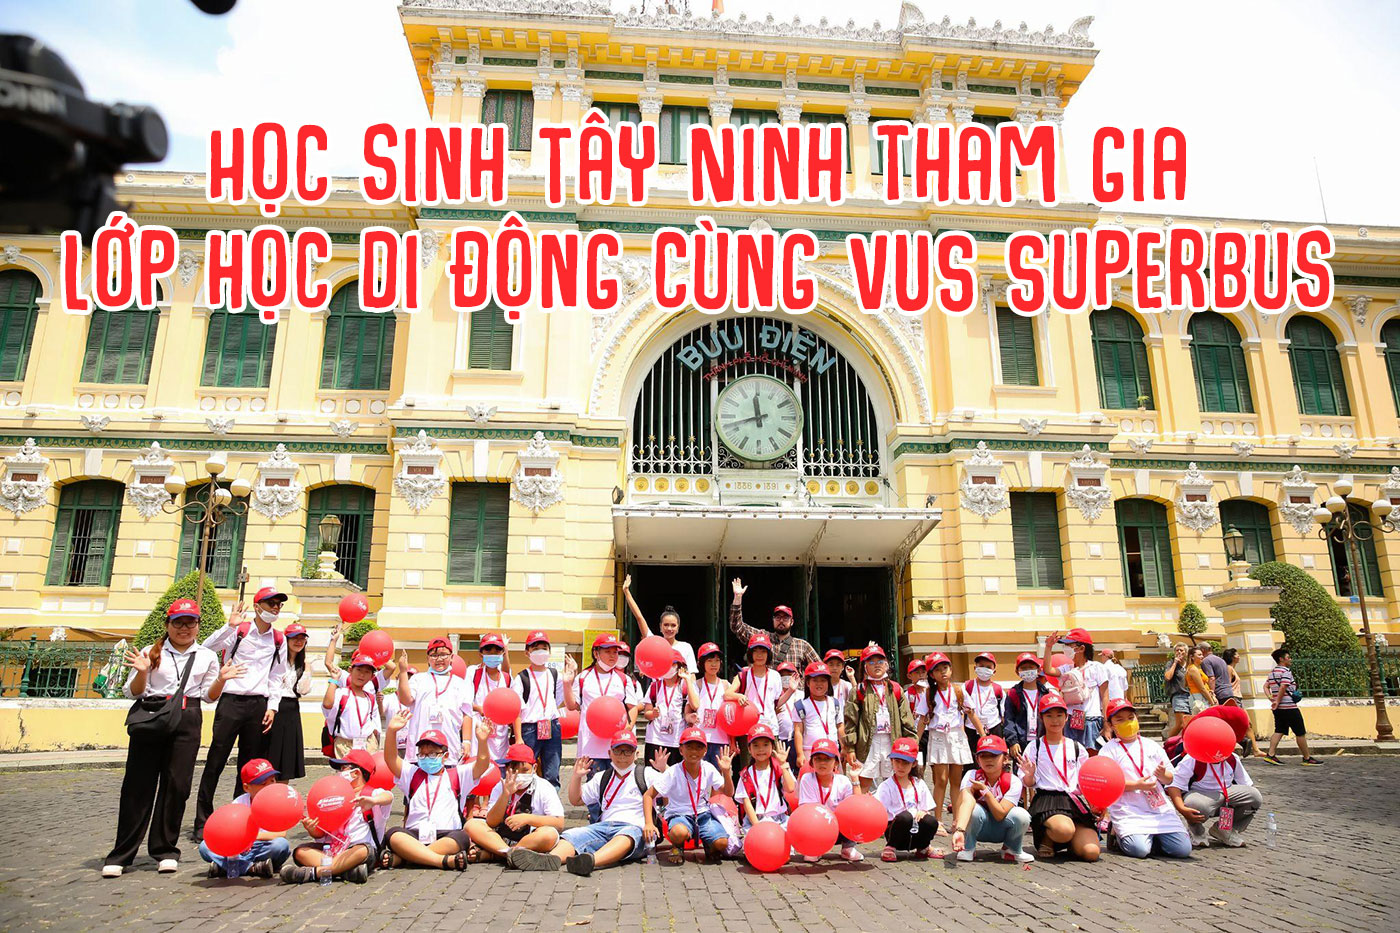 Học sinh Tây Ninh tham gia lớp học di động cùng VUS Superbus - Ảnh 1